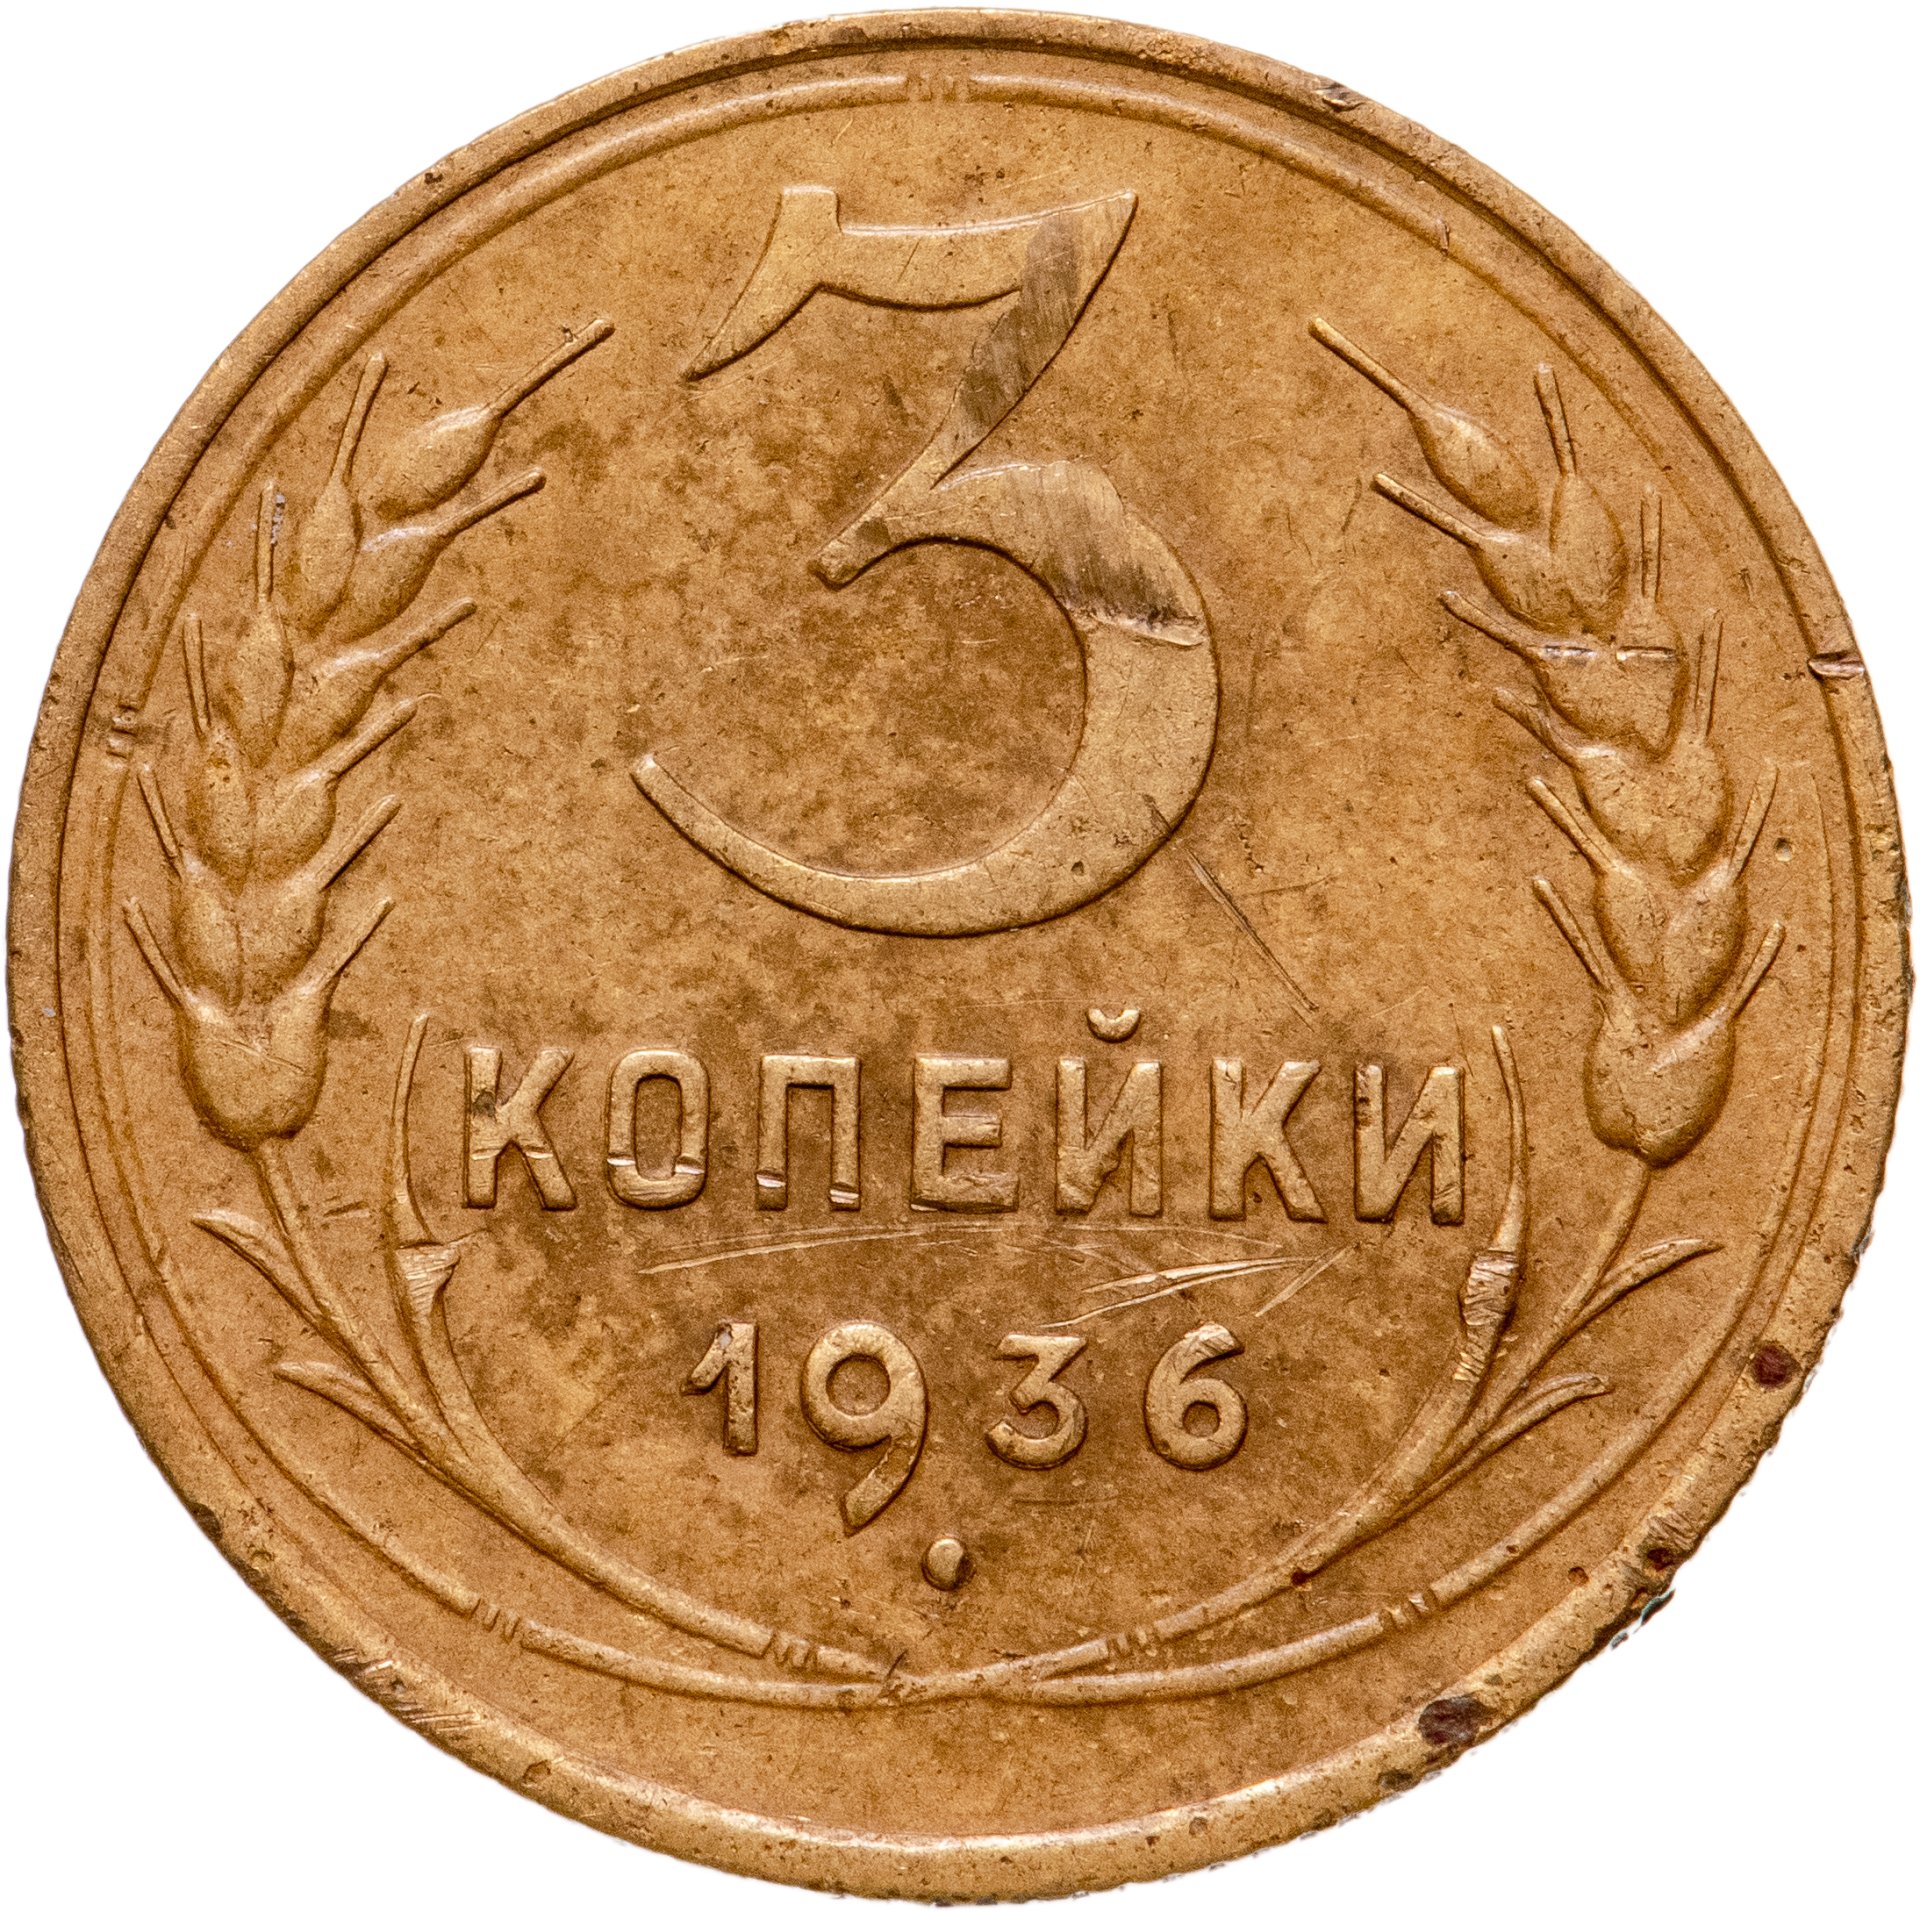 Сколько стоят монеты 1946